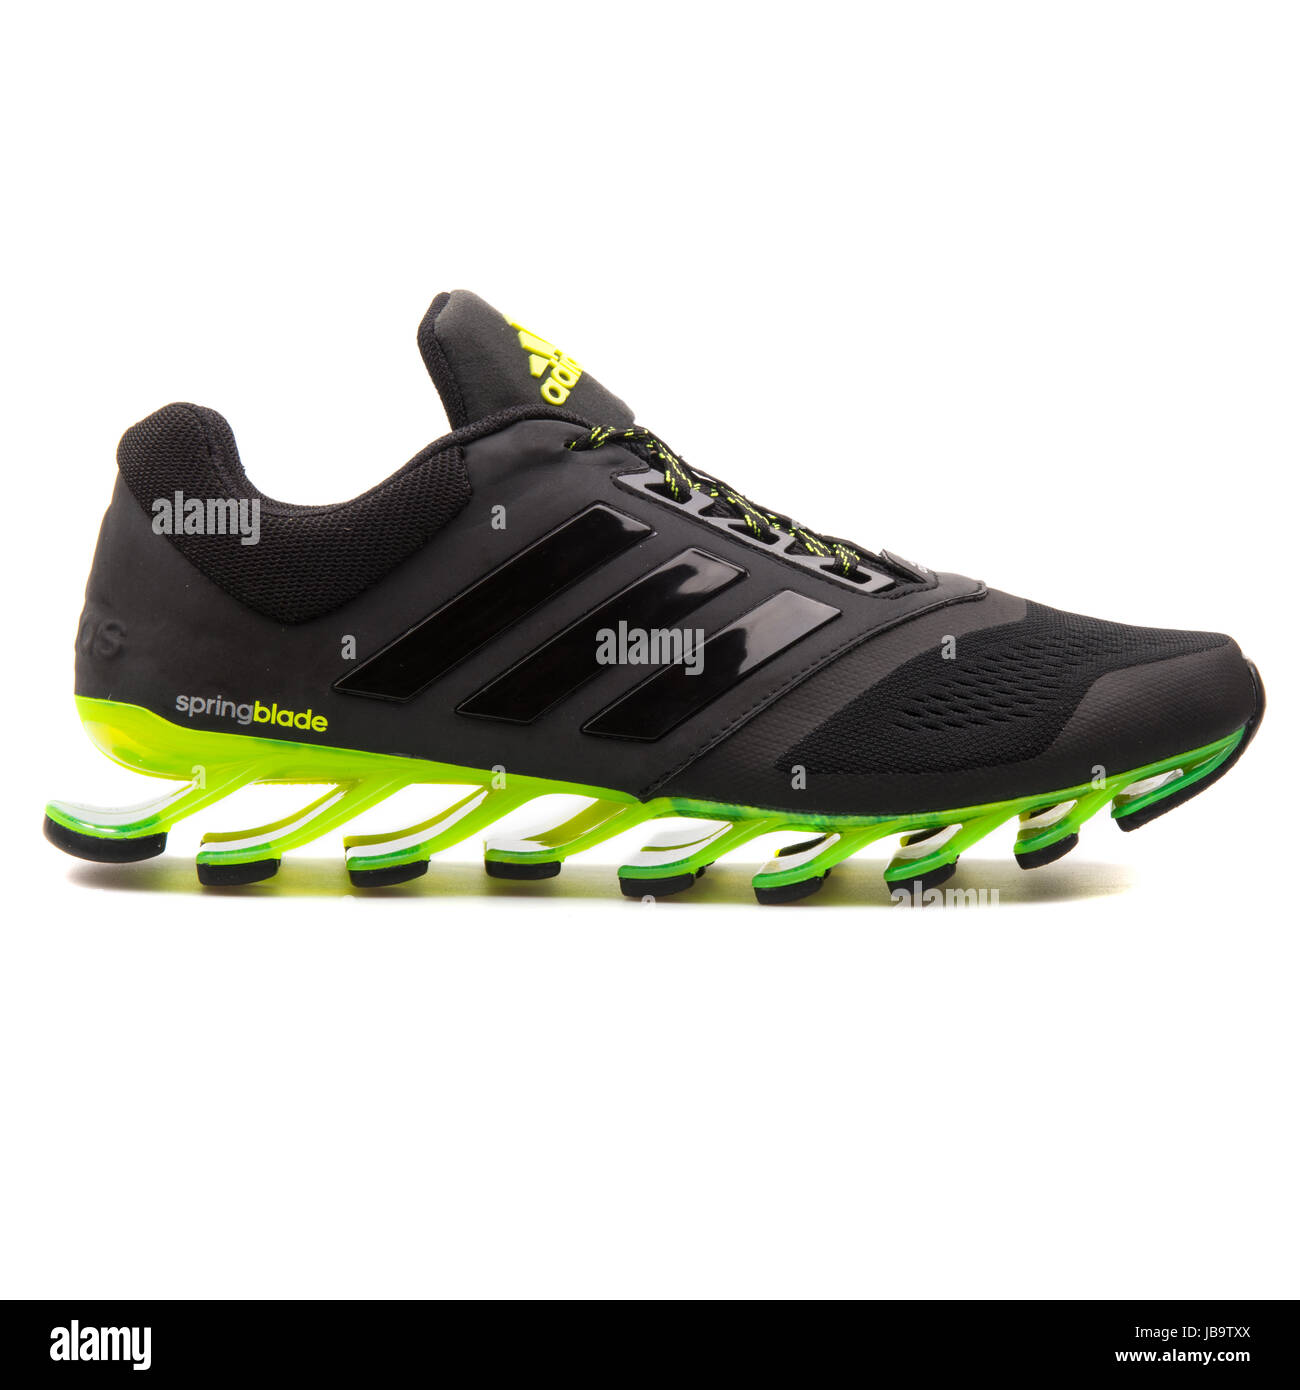 Adidas Springblade Drive 2 m y verde, hombres ejecutan Sneakers - D69684 Fotografía stock - Alamy